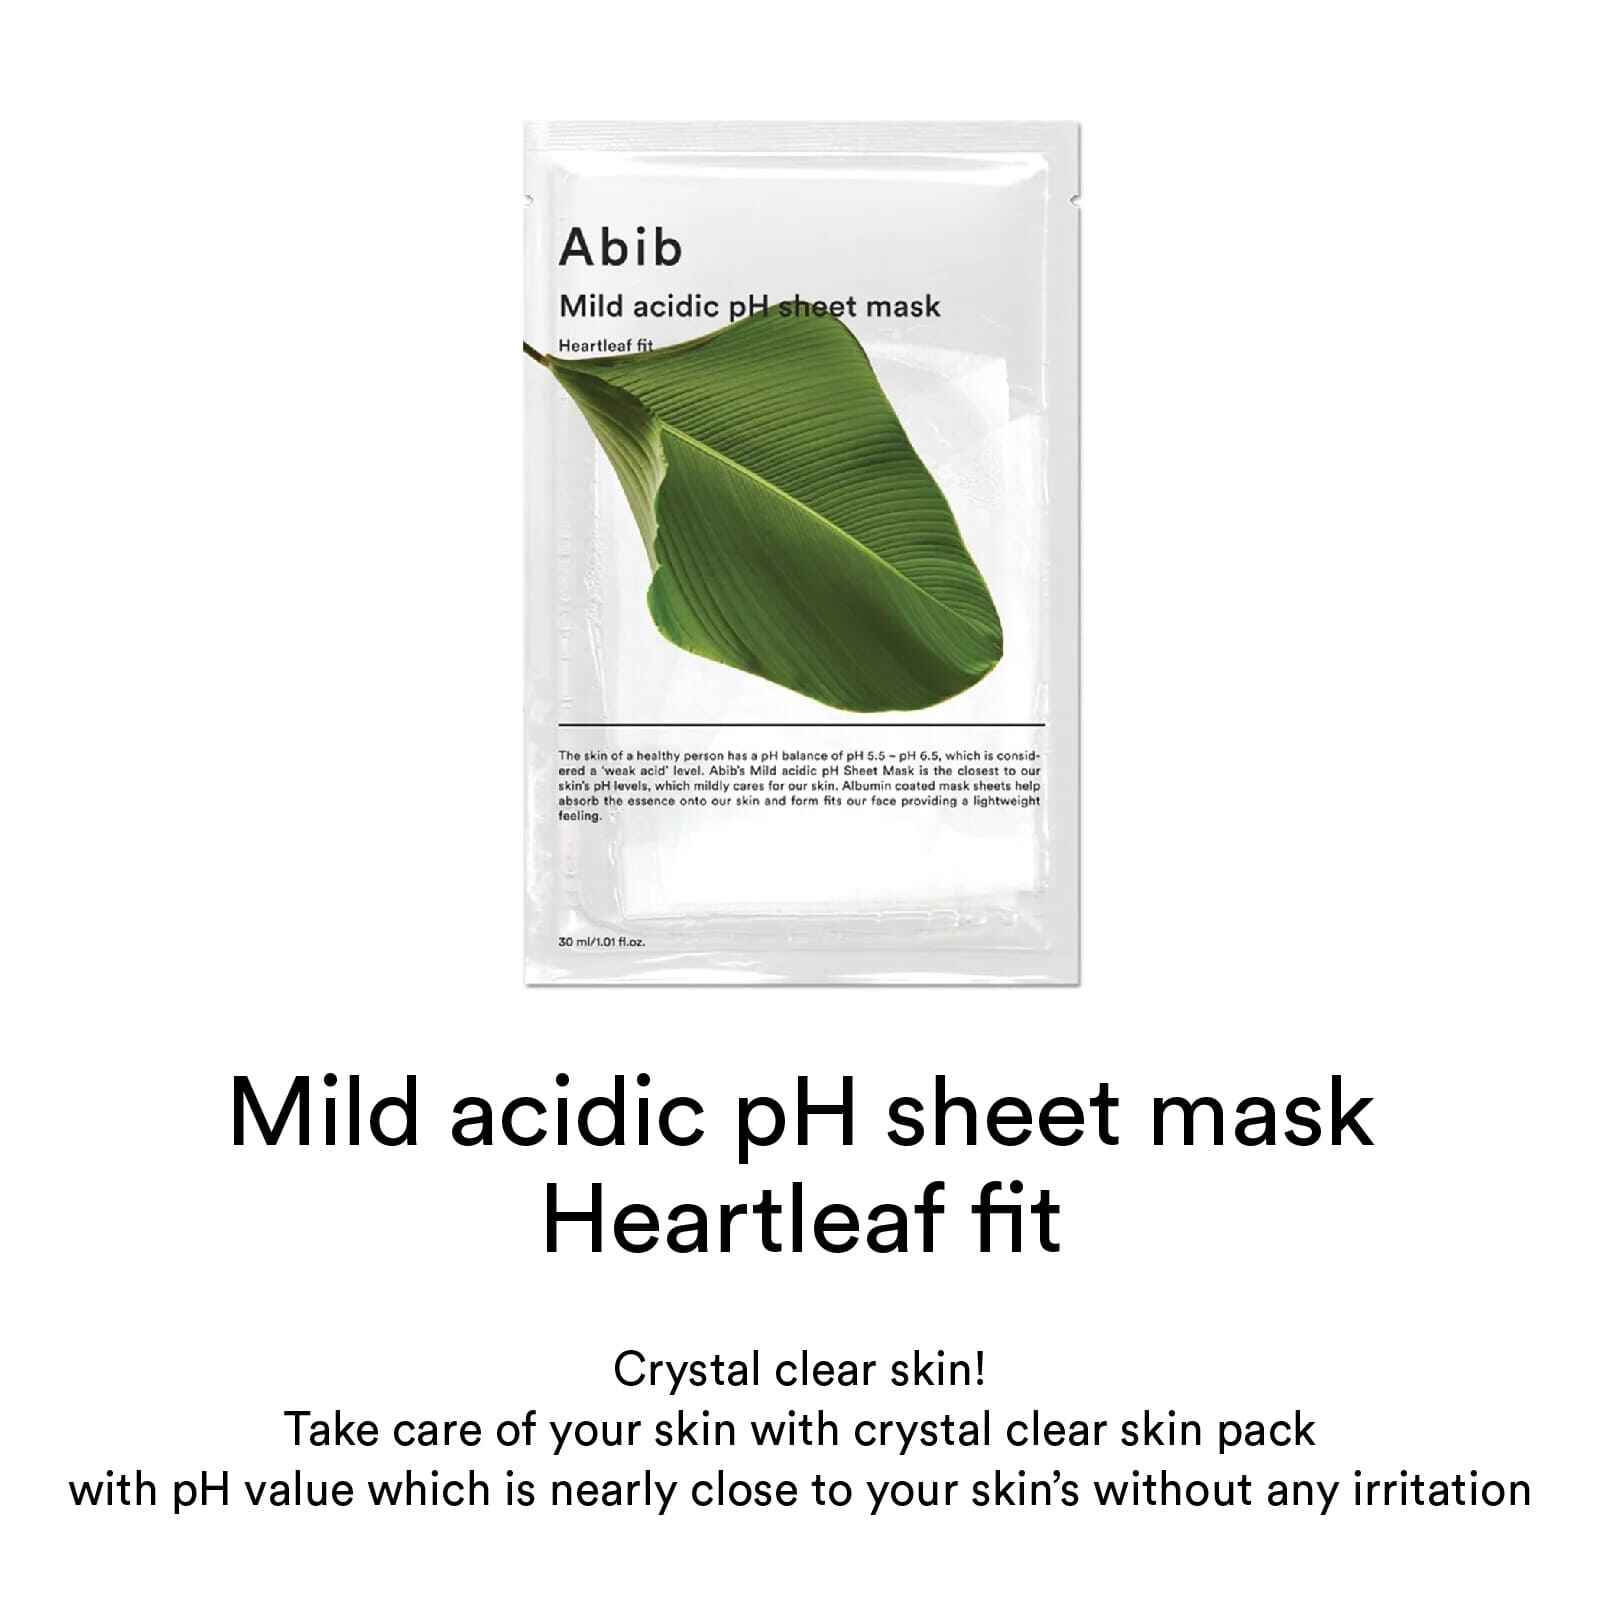 ماسک ورقه ای تسکین بخش هارت لیف ابیب مدل  Mild Acidic PH